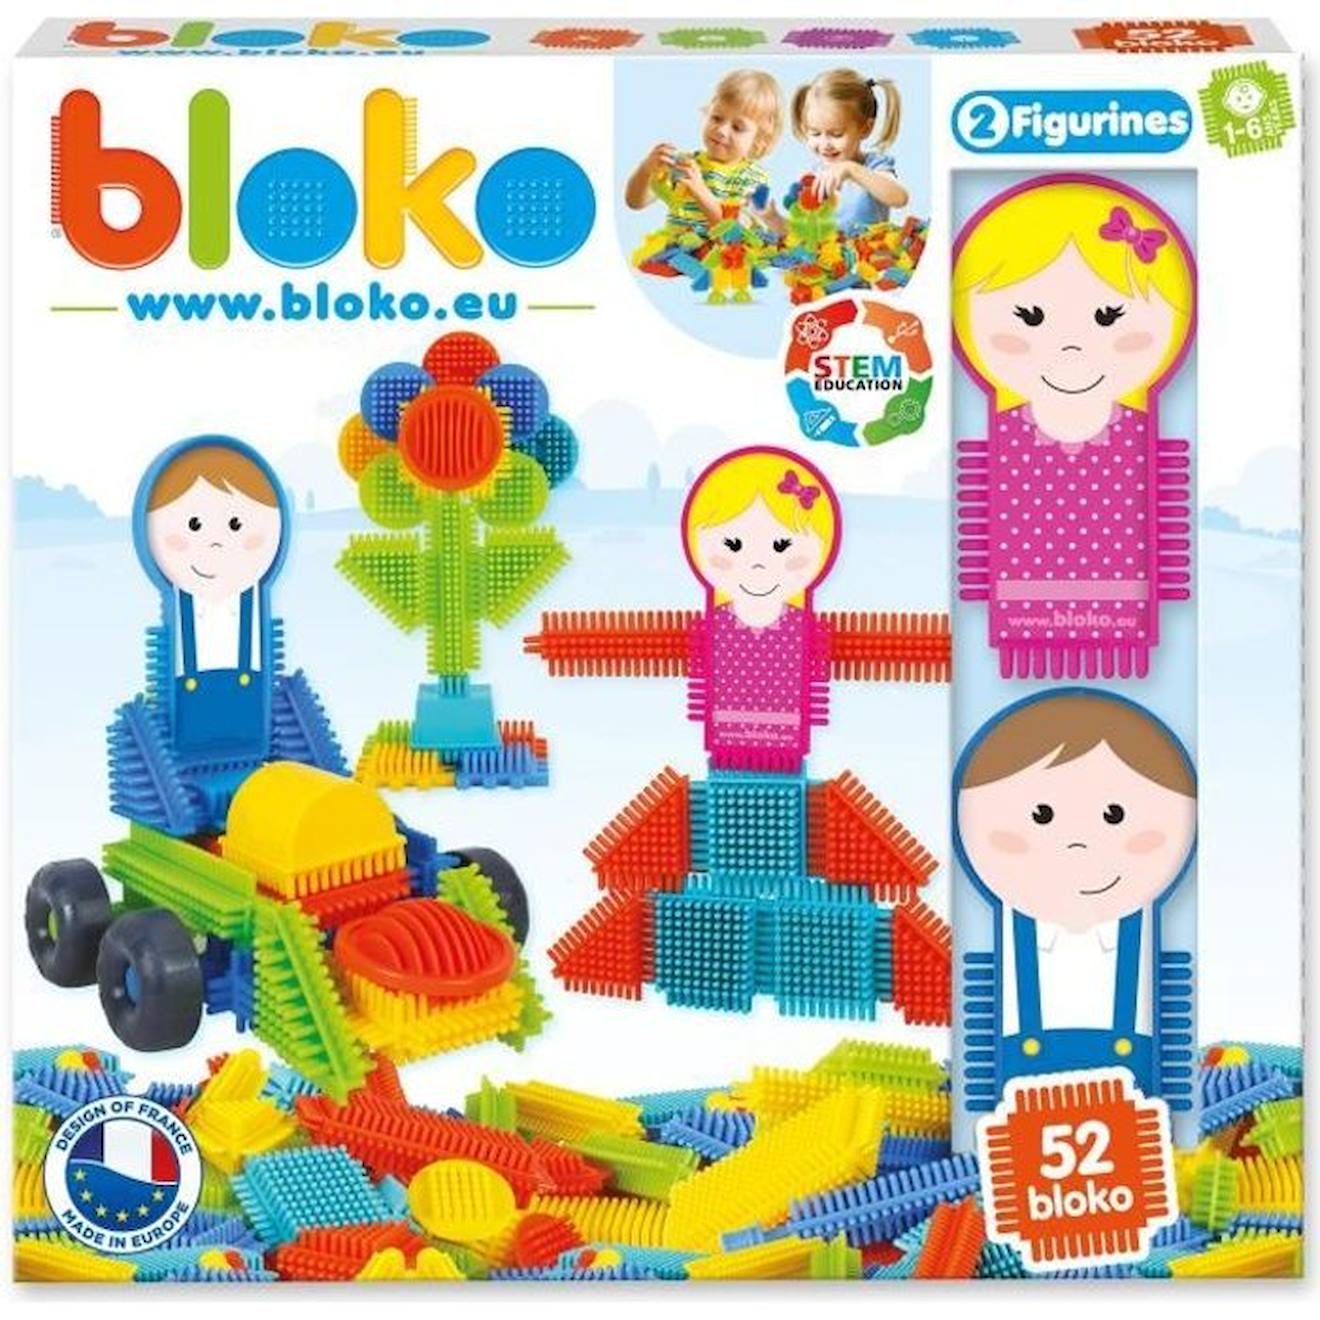 Jeu D'assemblage - Bloko - Coffret De 50 Bloko Et 2 Figurines Family - Dès 12 Mois - Fabriqué En Eur